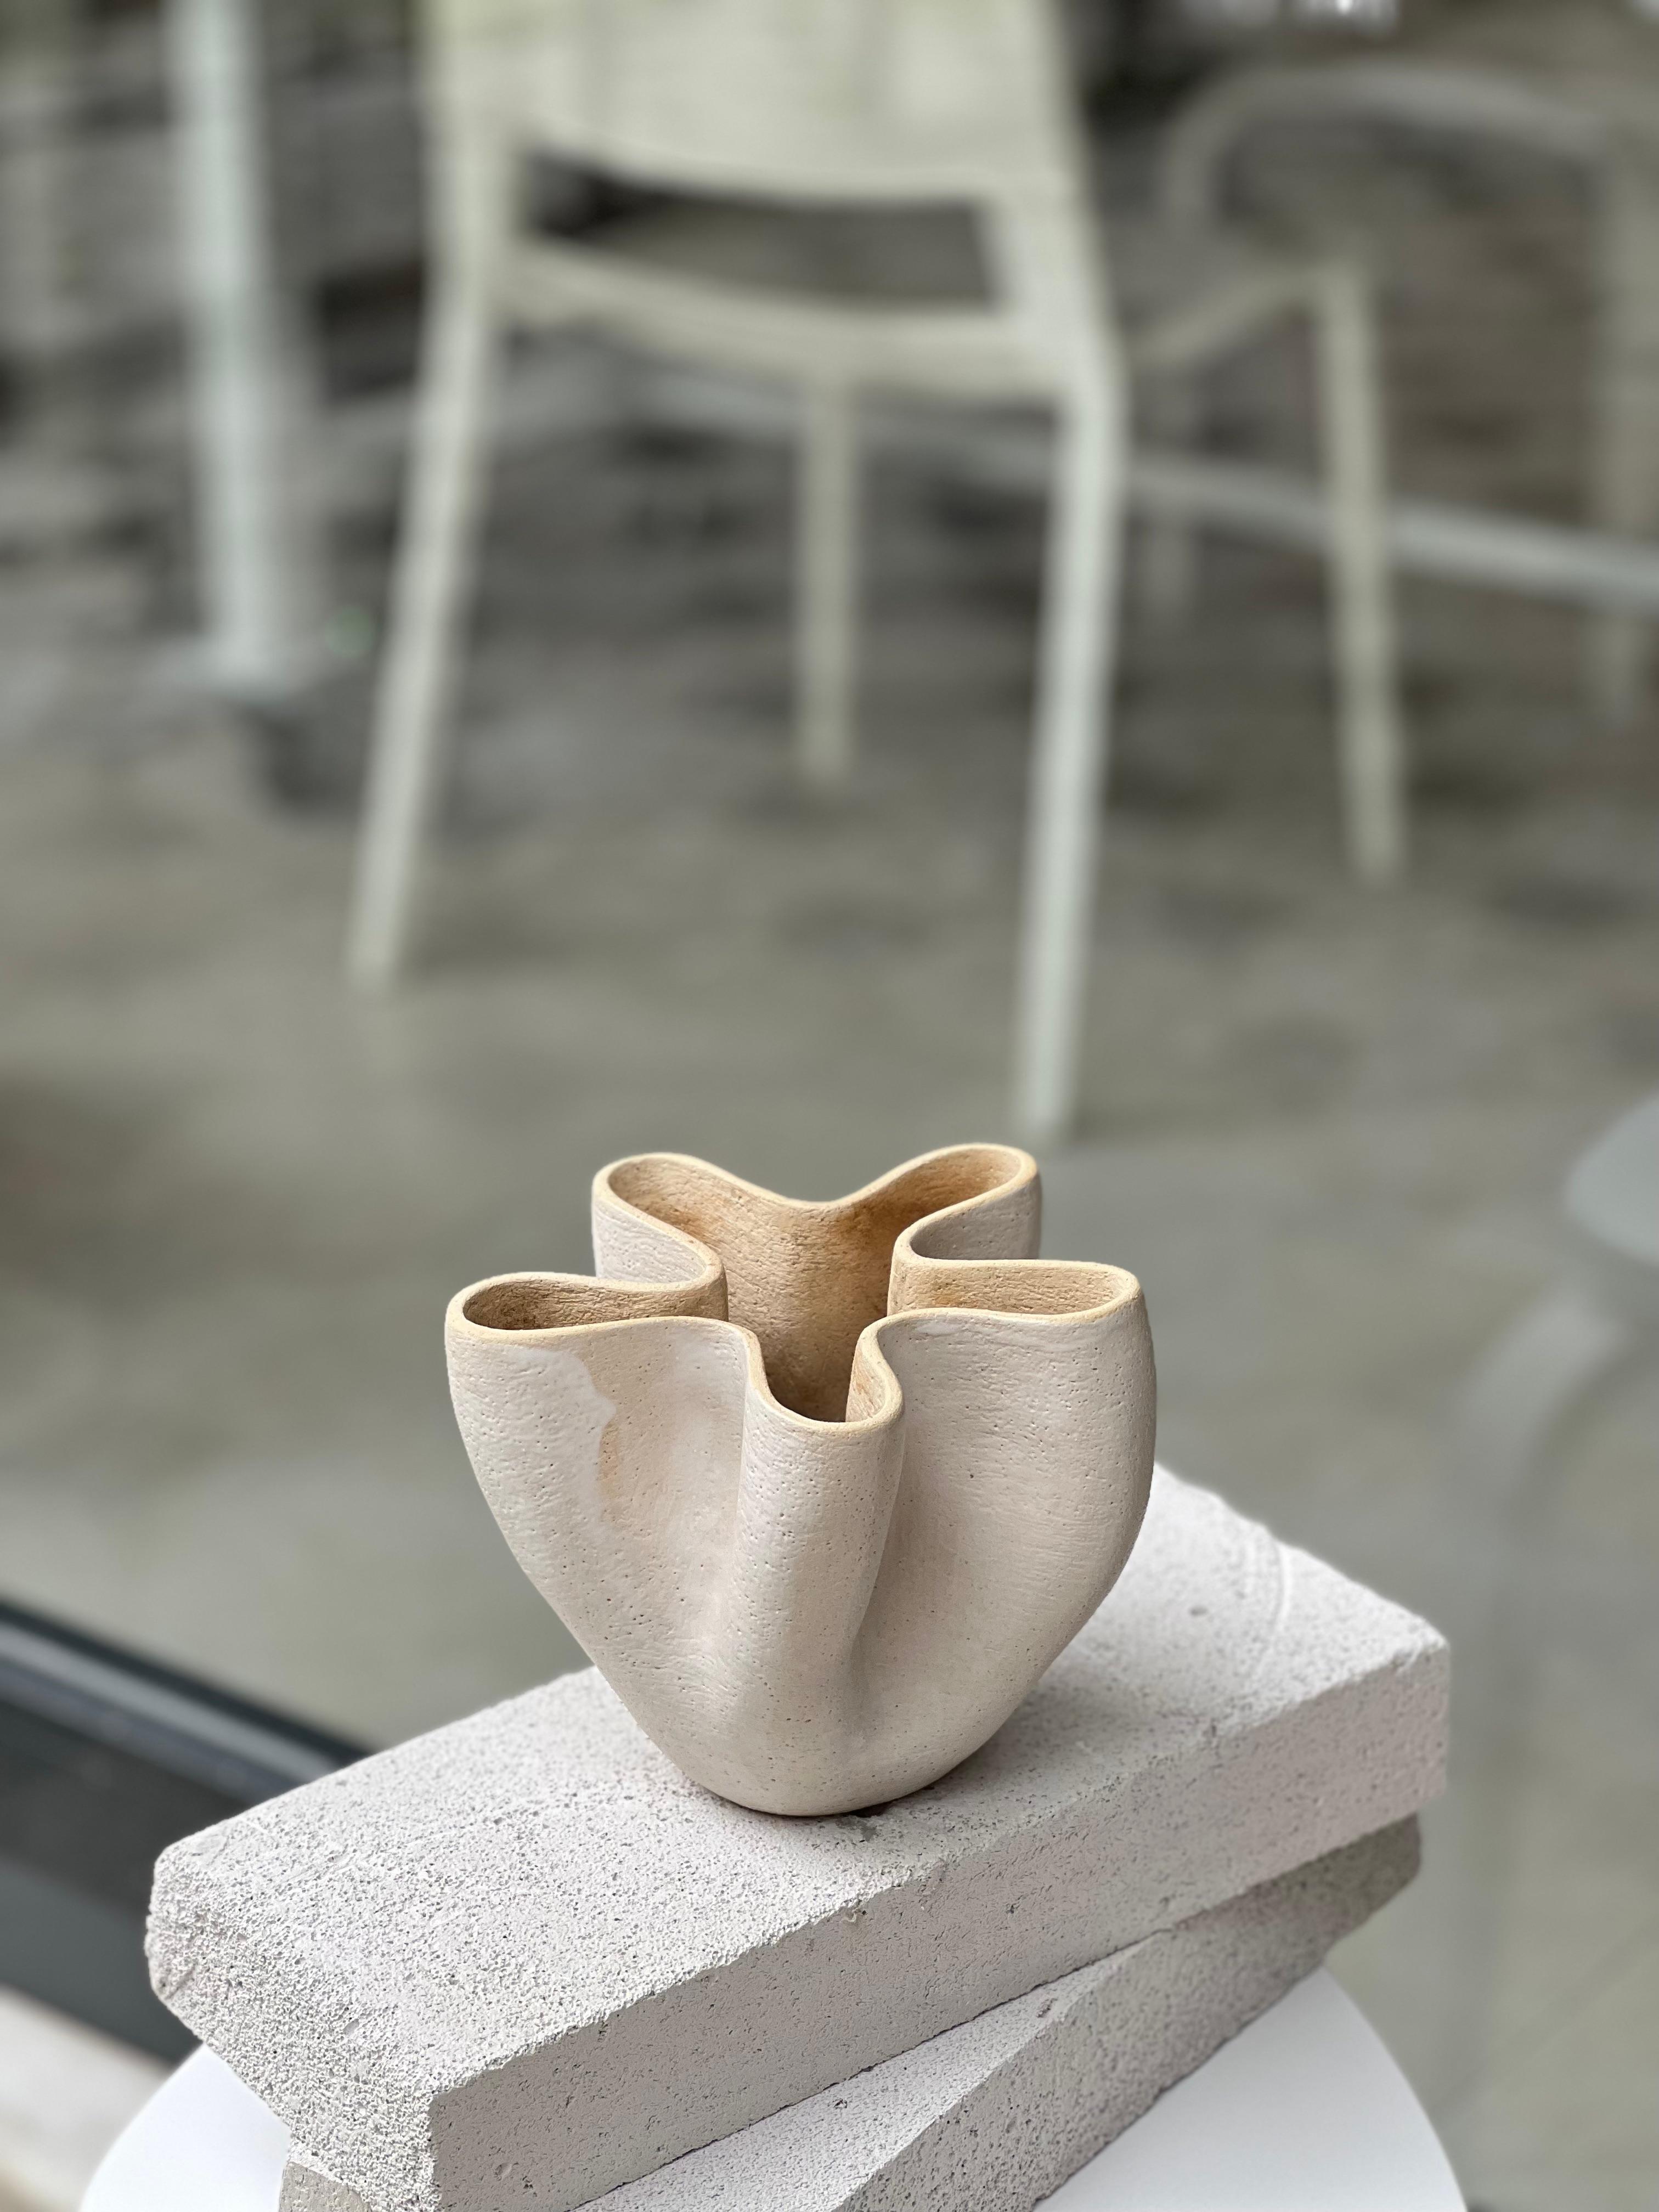 Anatolische 7-Vase von Güler Elçi
Abmessungen: B 17,7 x T 17,7 x H 20,3 cm.
MATERIALIEN: Steingut Keramik.

Güler Elçi ist eine in Istanbul ansässige Keramikkünstlerin. Vor dem Hintergrund ihrer Karriere als Ingenieurin betrachtet sie Keramik als